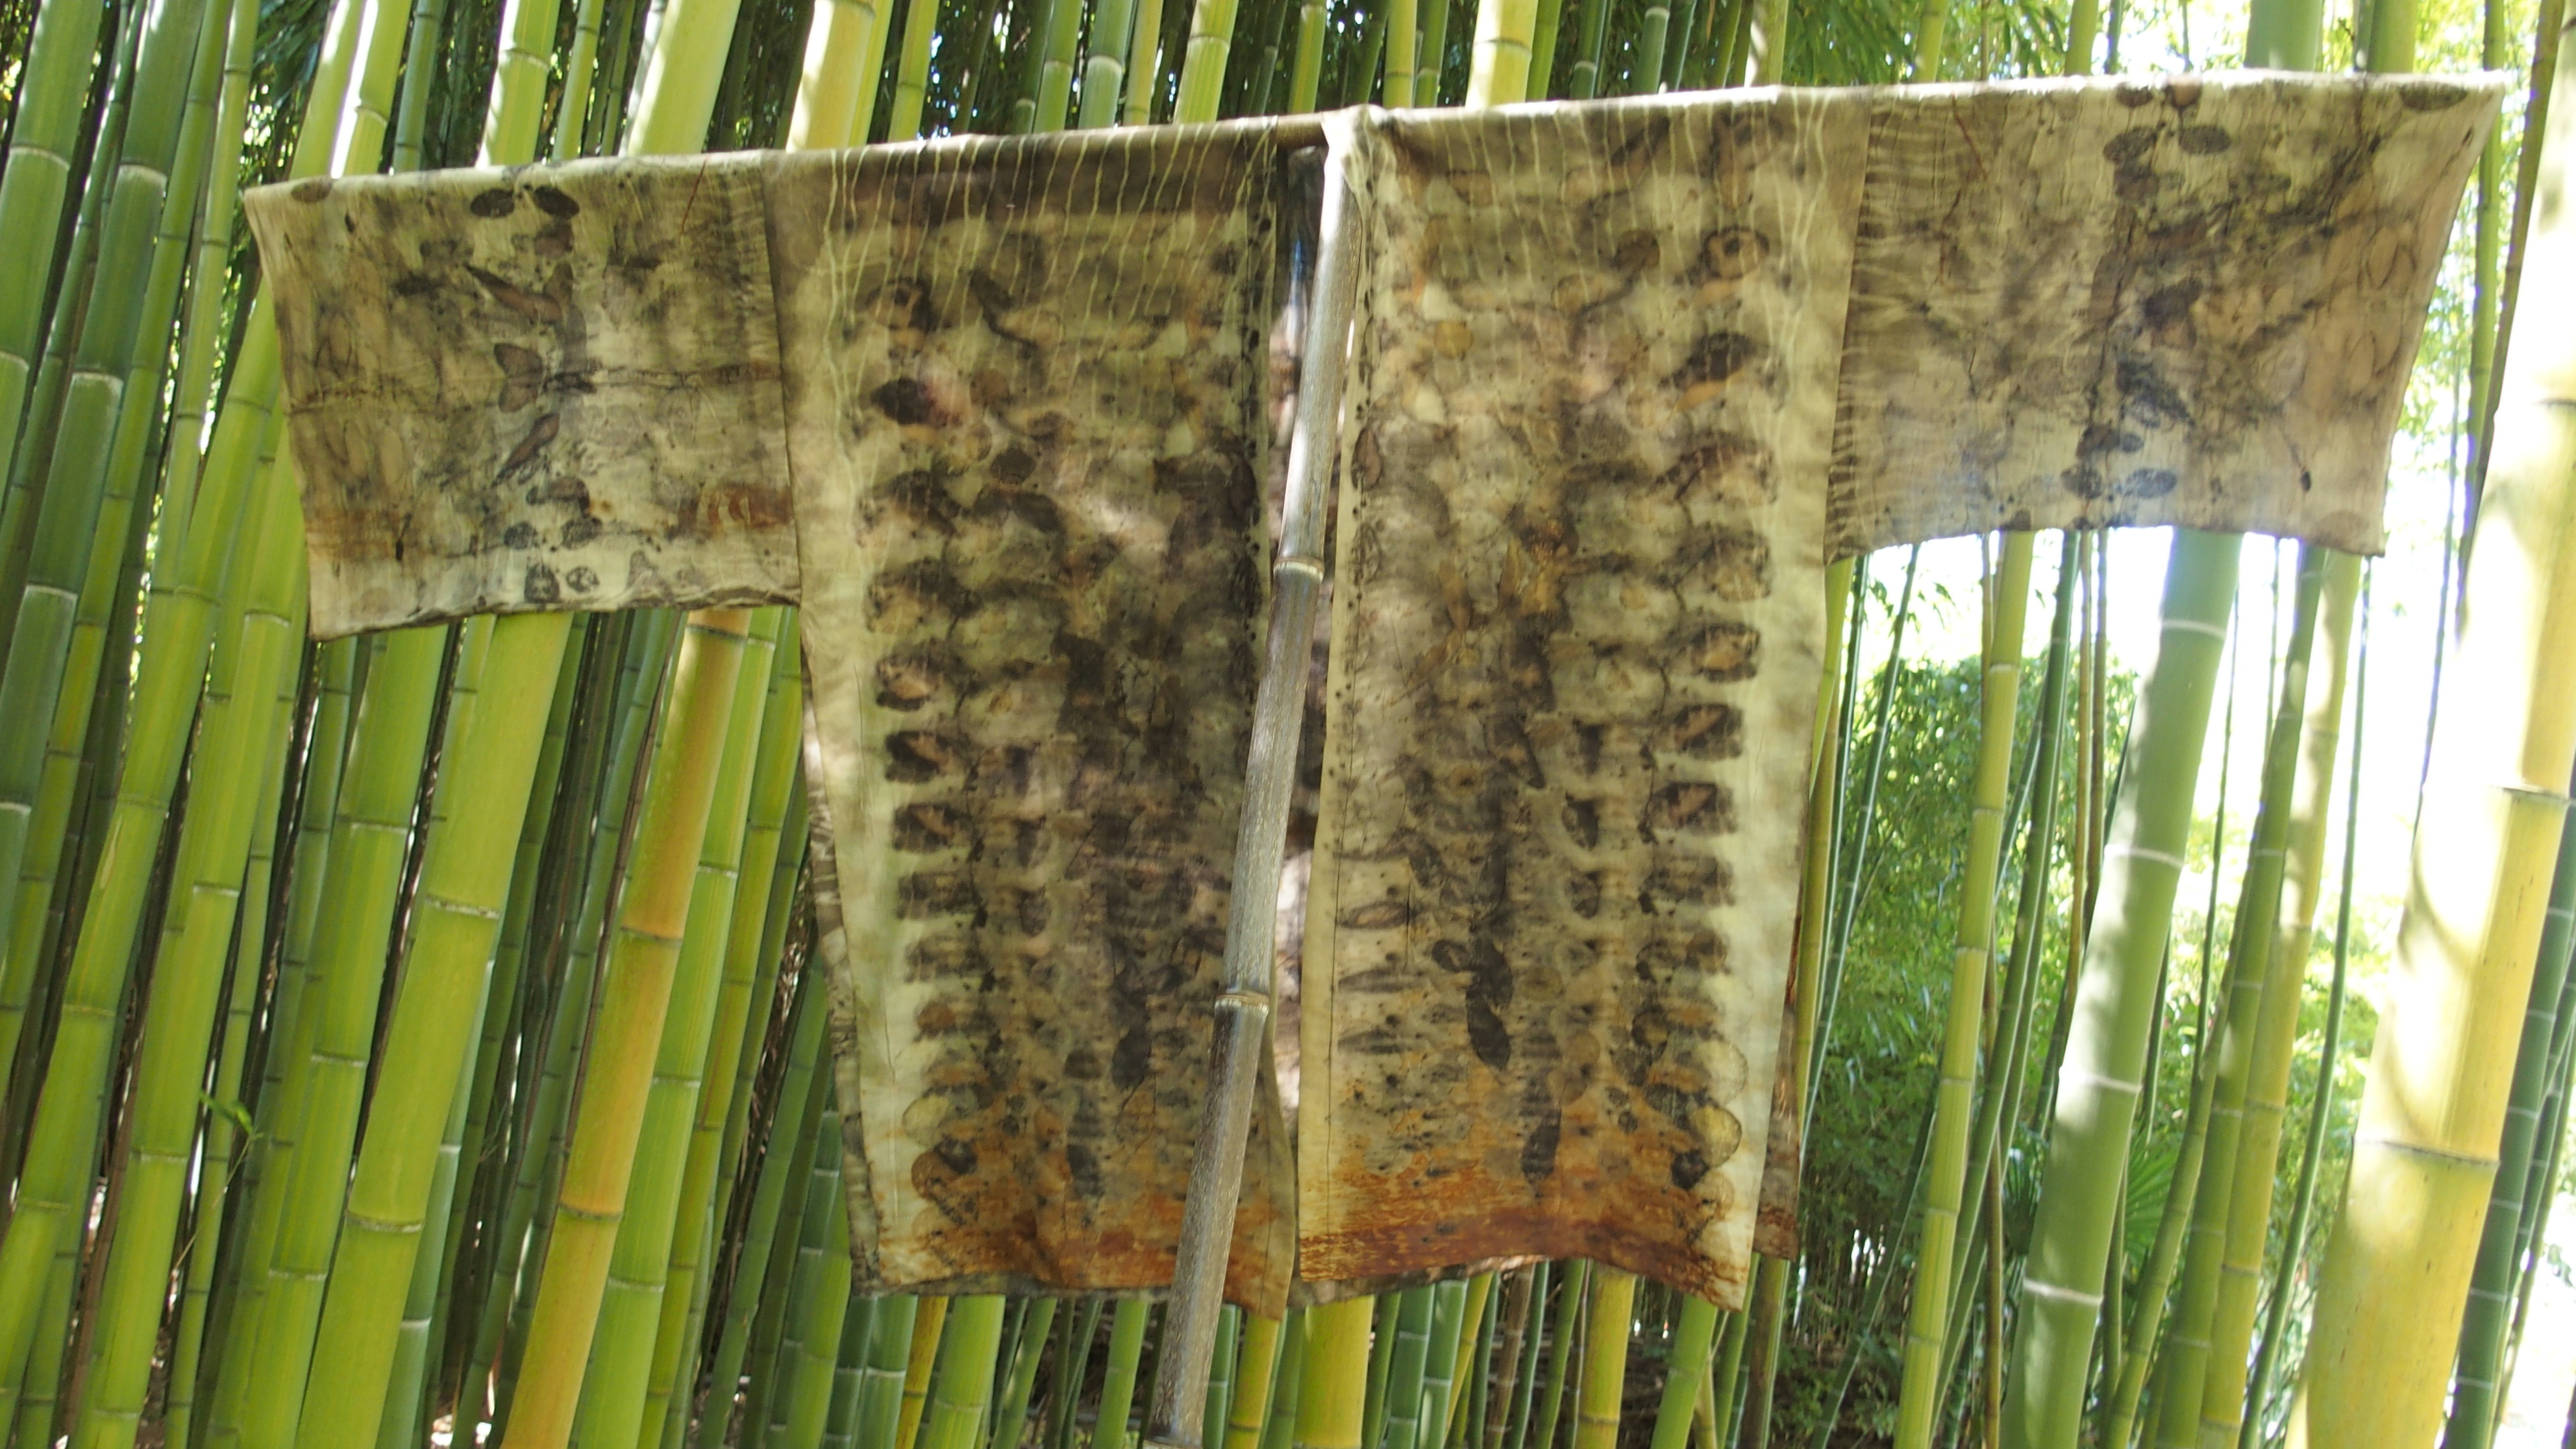 exposition Shinrin-Yoku de mapie des vignes et helena sellergren.kimono "Sous Bois" empreintes végétales sur soie